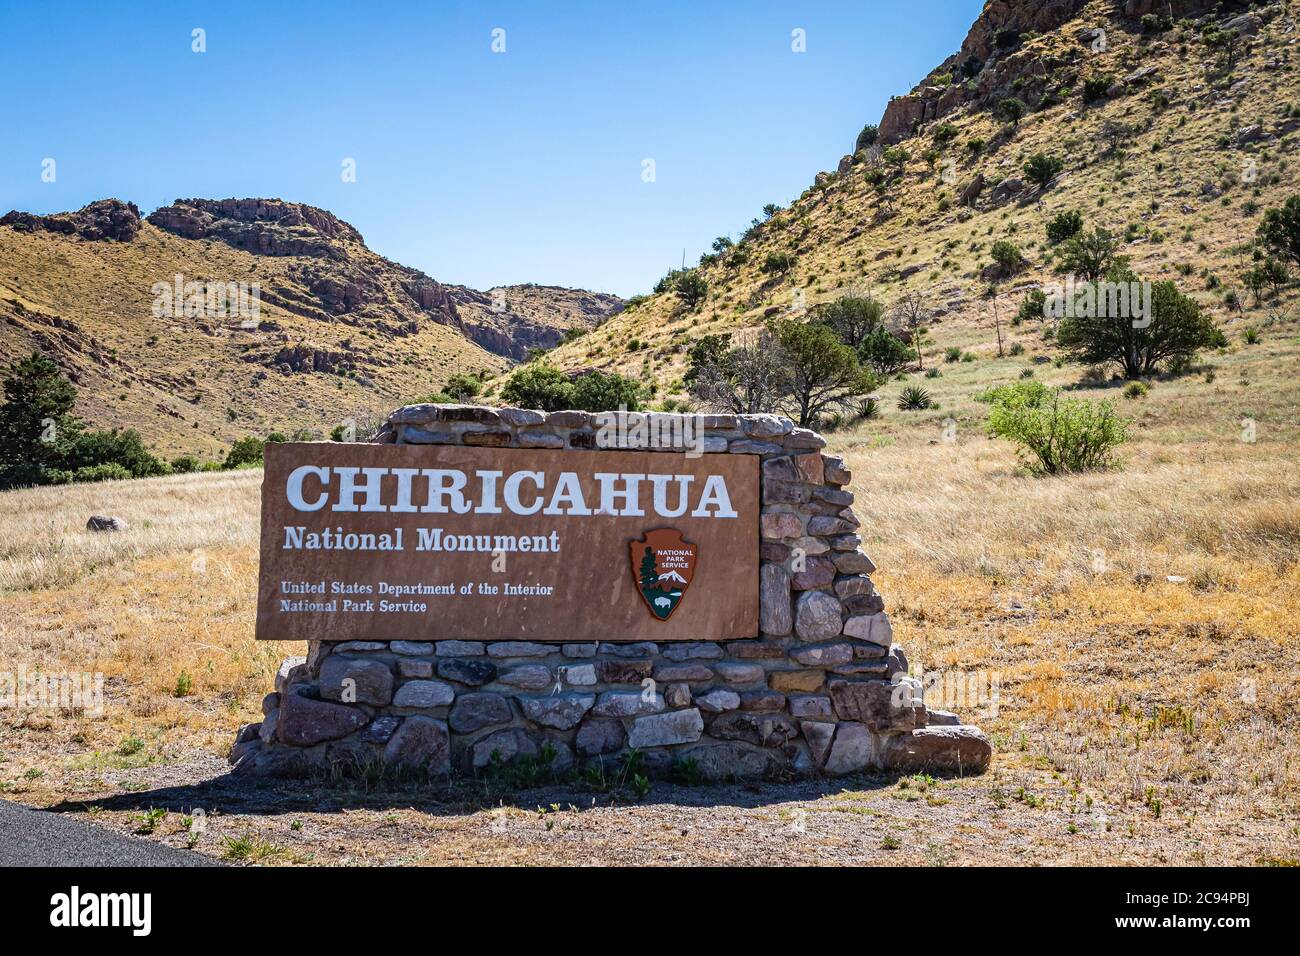 Cochise County, Arizona, USA - 6 marzo 2019: Una vista dettagliata del cartello d'ingresso per il monumento nazionale Chiricahua. Foto Stock